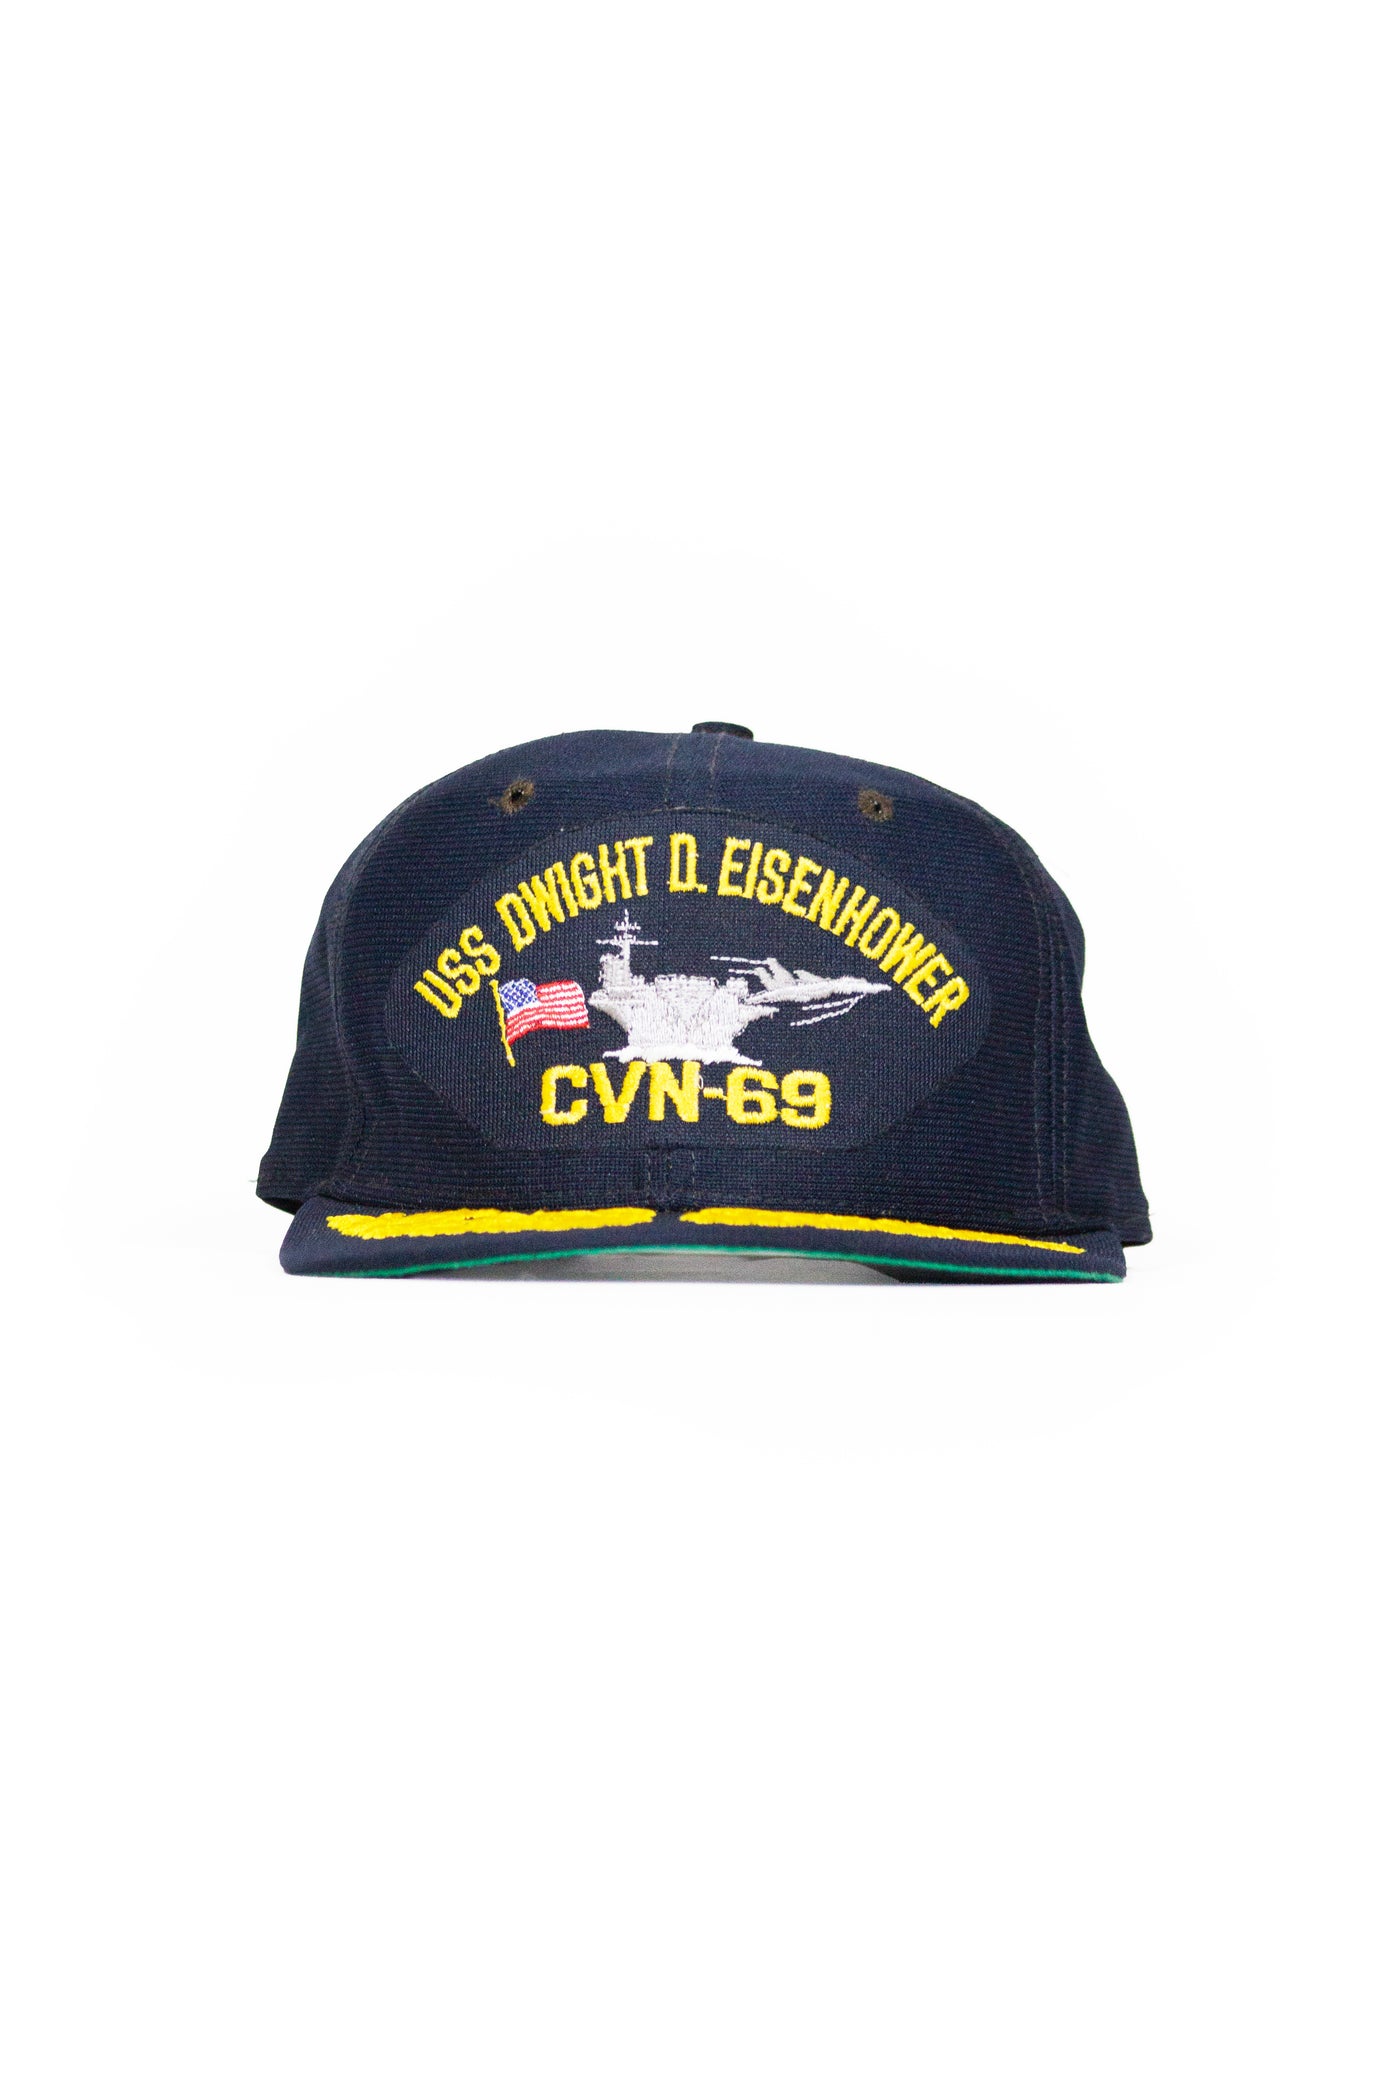 Vintage New Era Snapback Hat USS Dwight D Eisenhower CVN-69 Navy